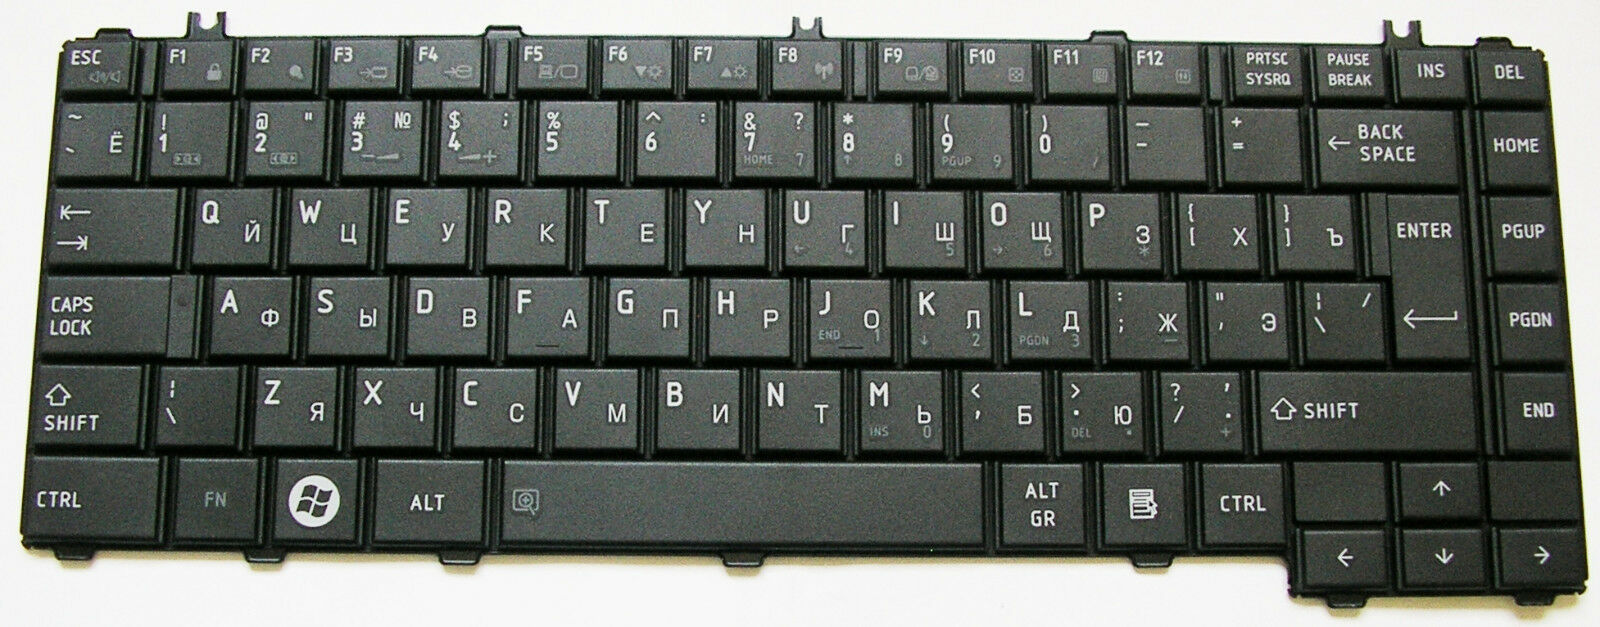 Dell Vostro 3500 клавиатура